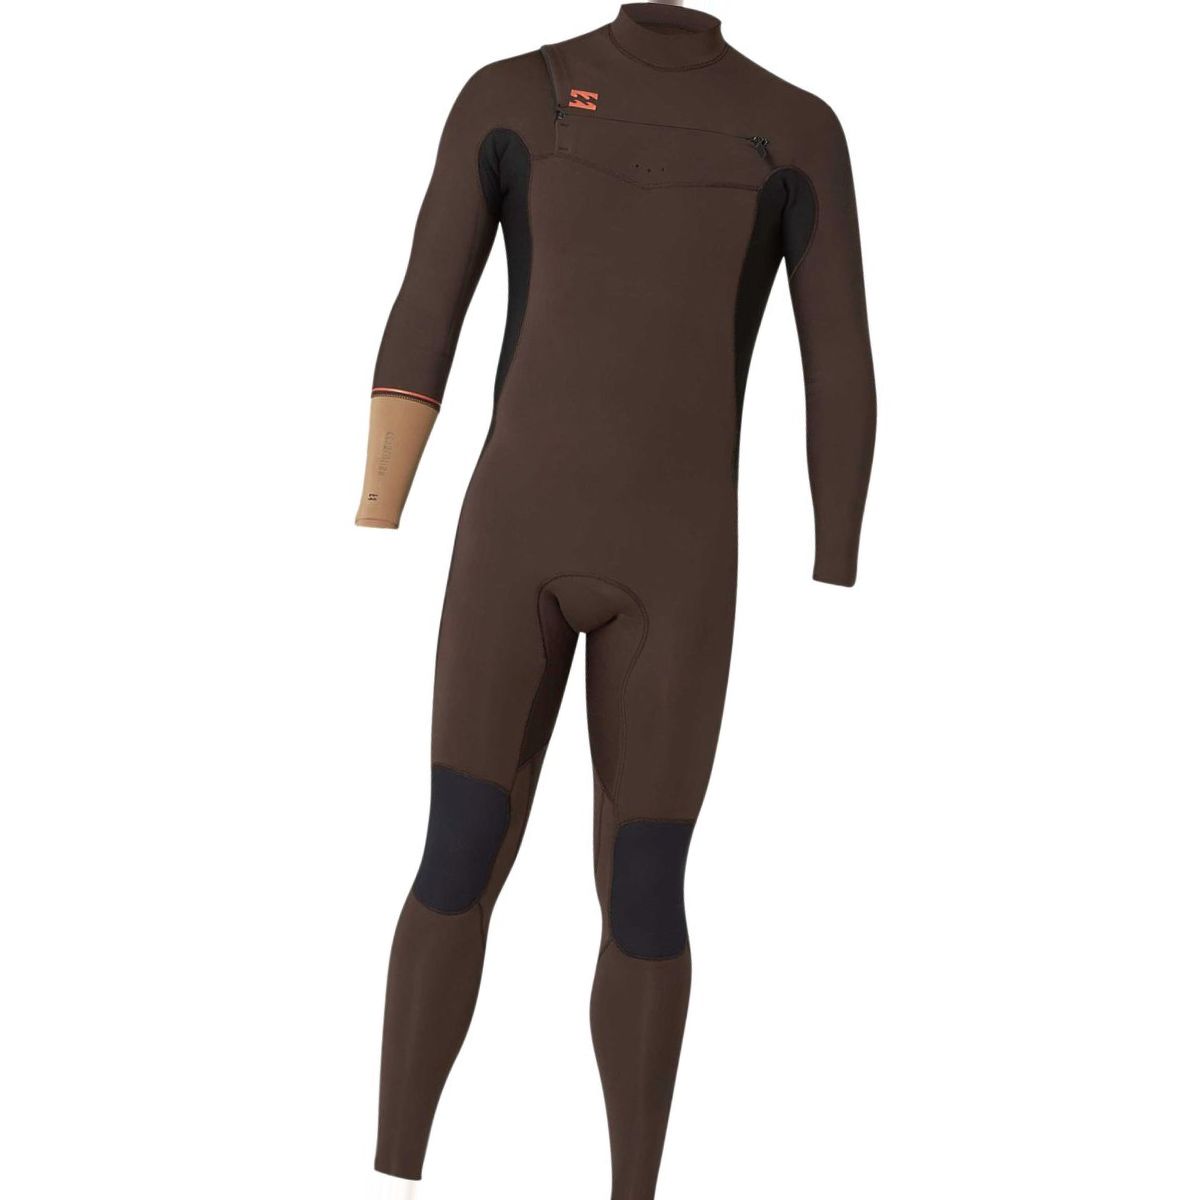 Billabong 4/3 Furnace Revolution Chest Zip Full Wetsuit - Men's